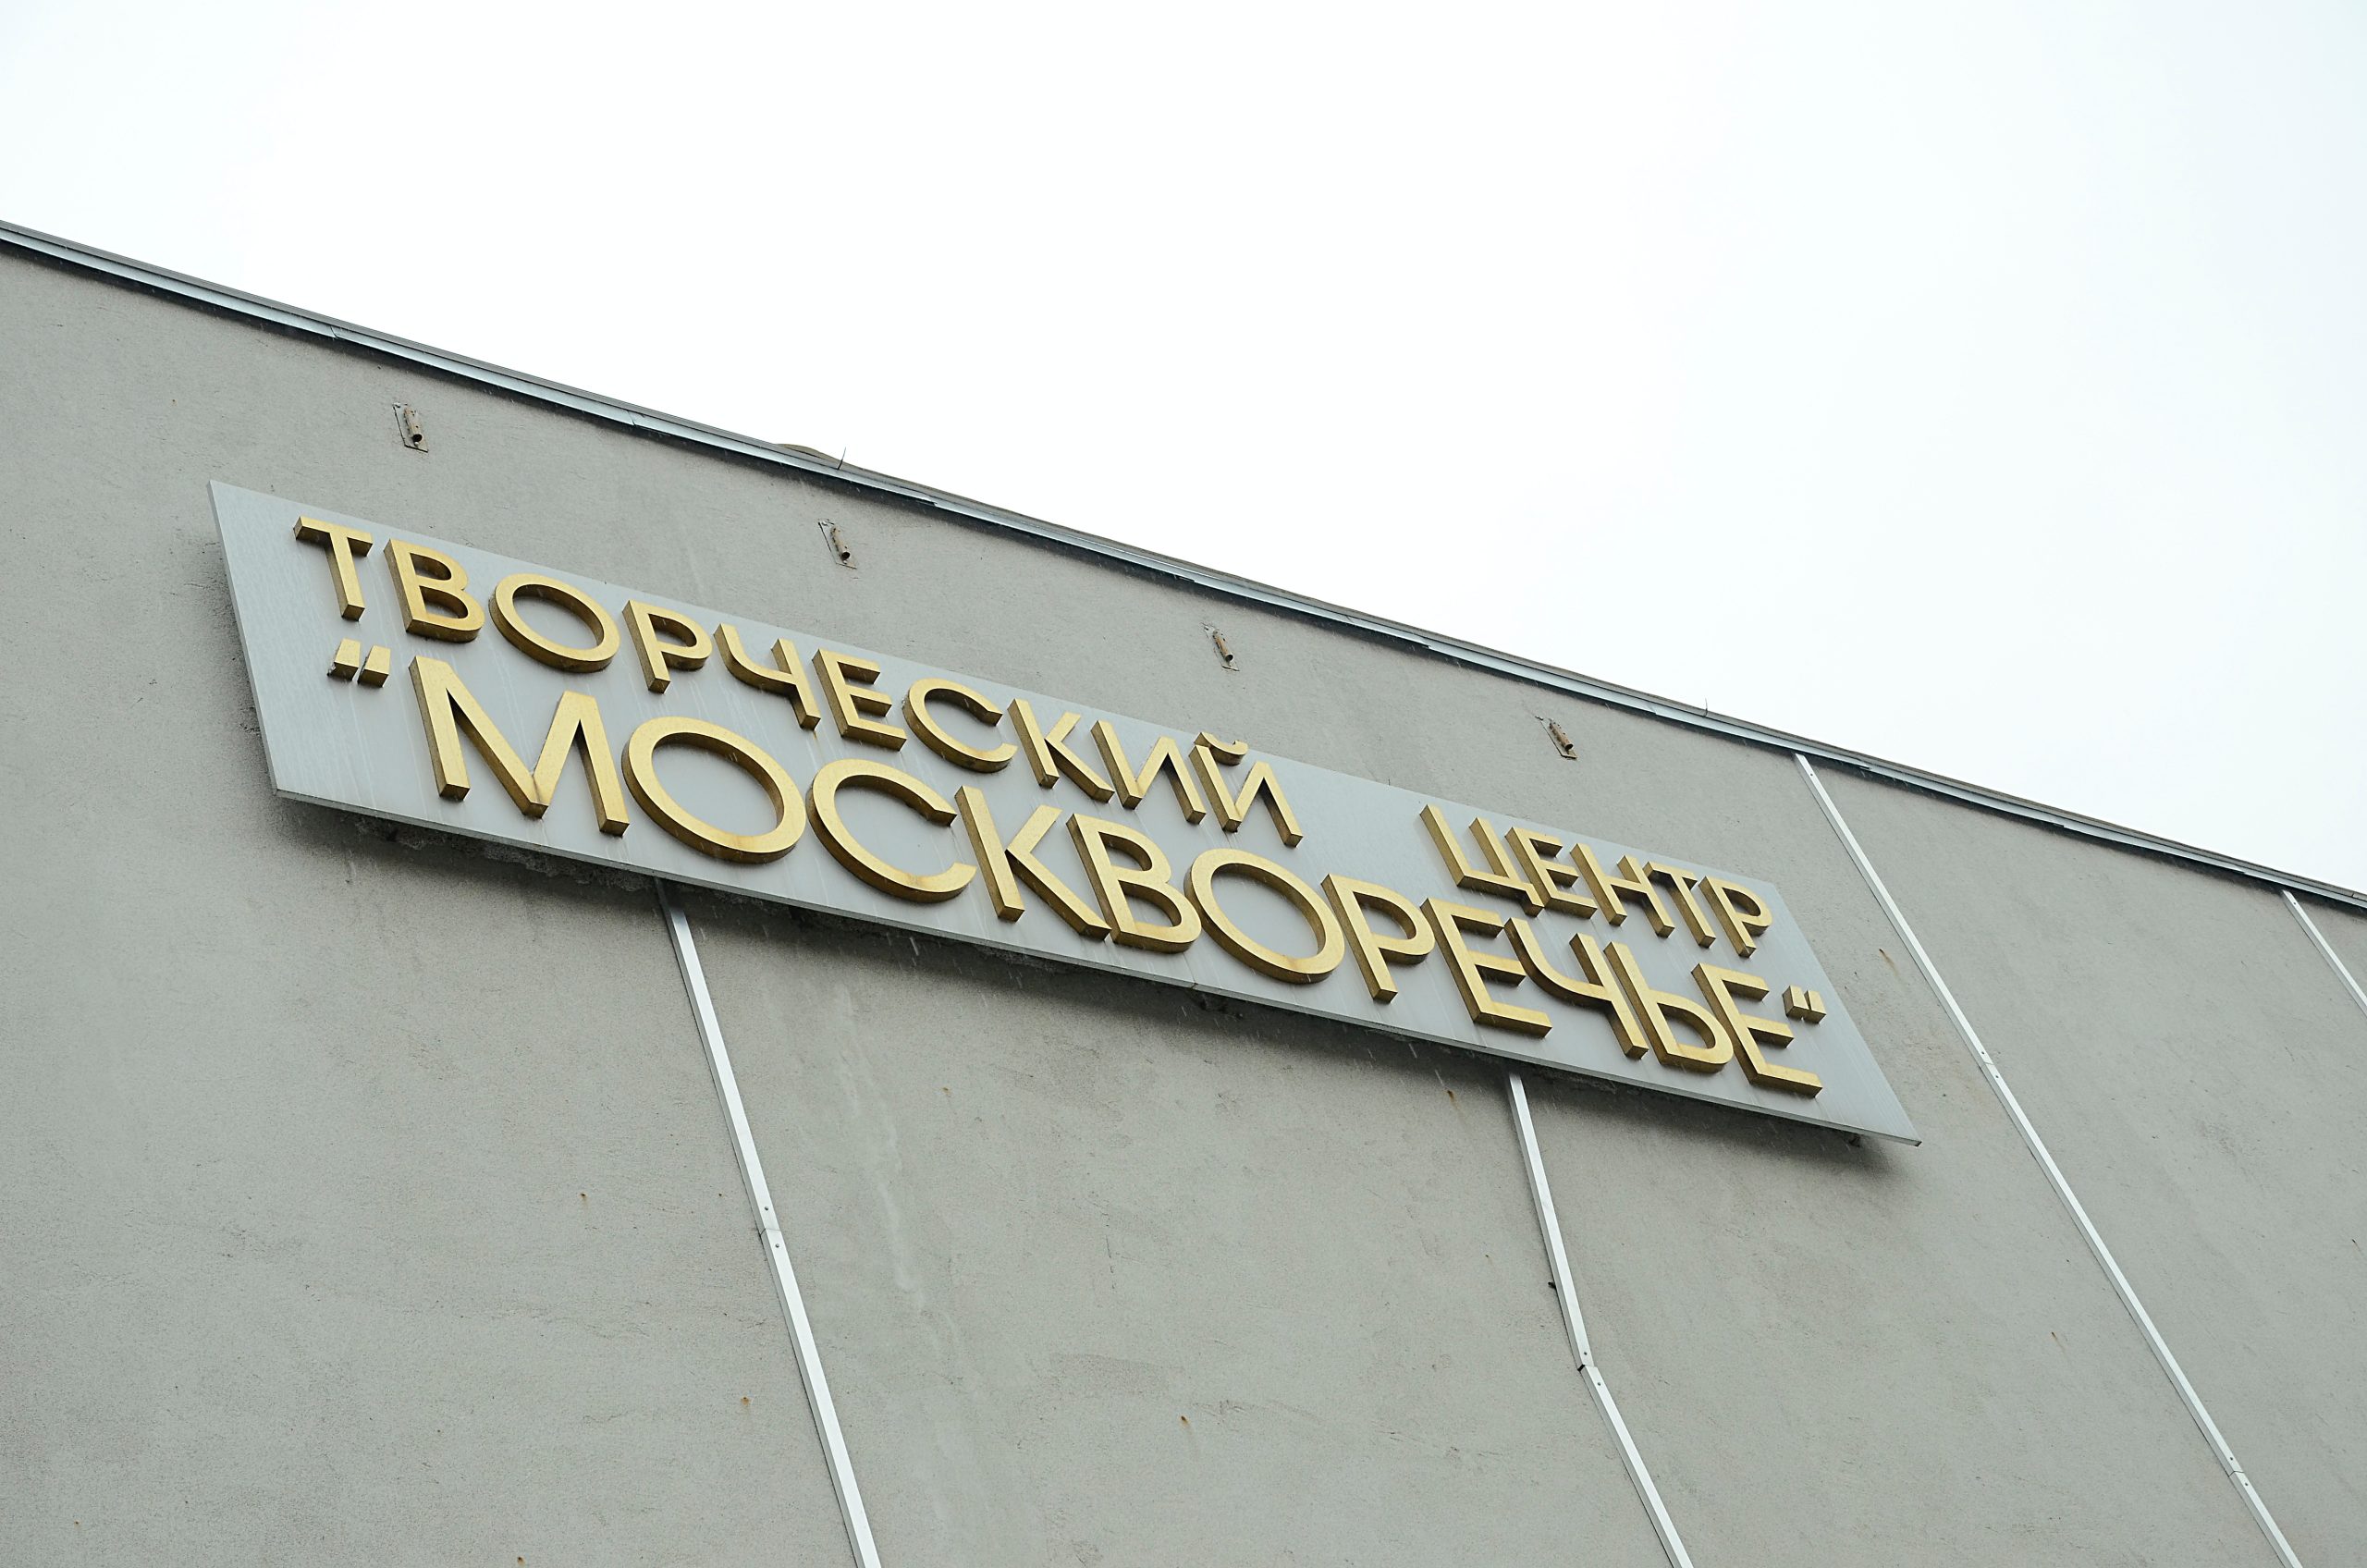 Познавательную лекцию организуют в КЦ «Москворечье». Фото: Анна Быкова, «Вечерняя Москва»